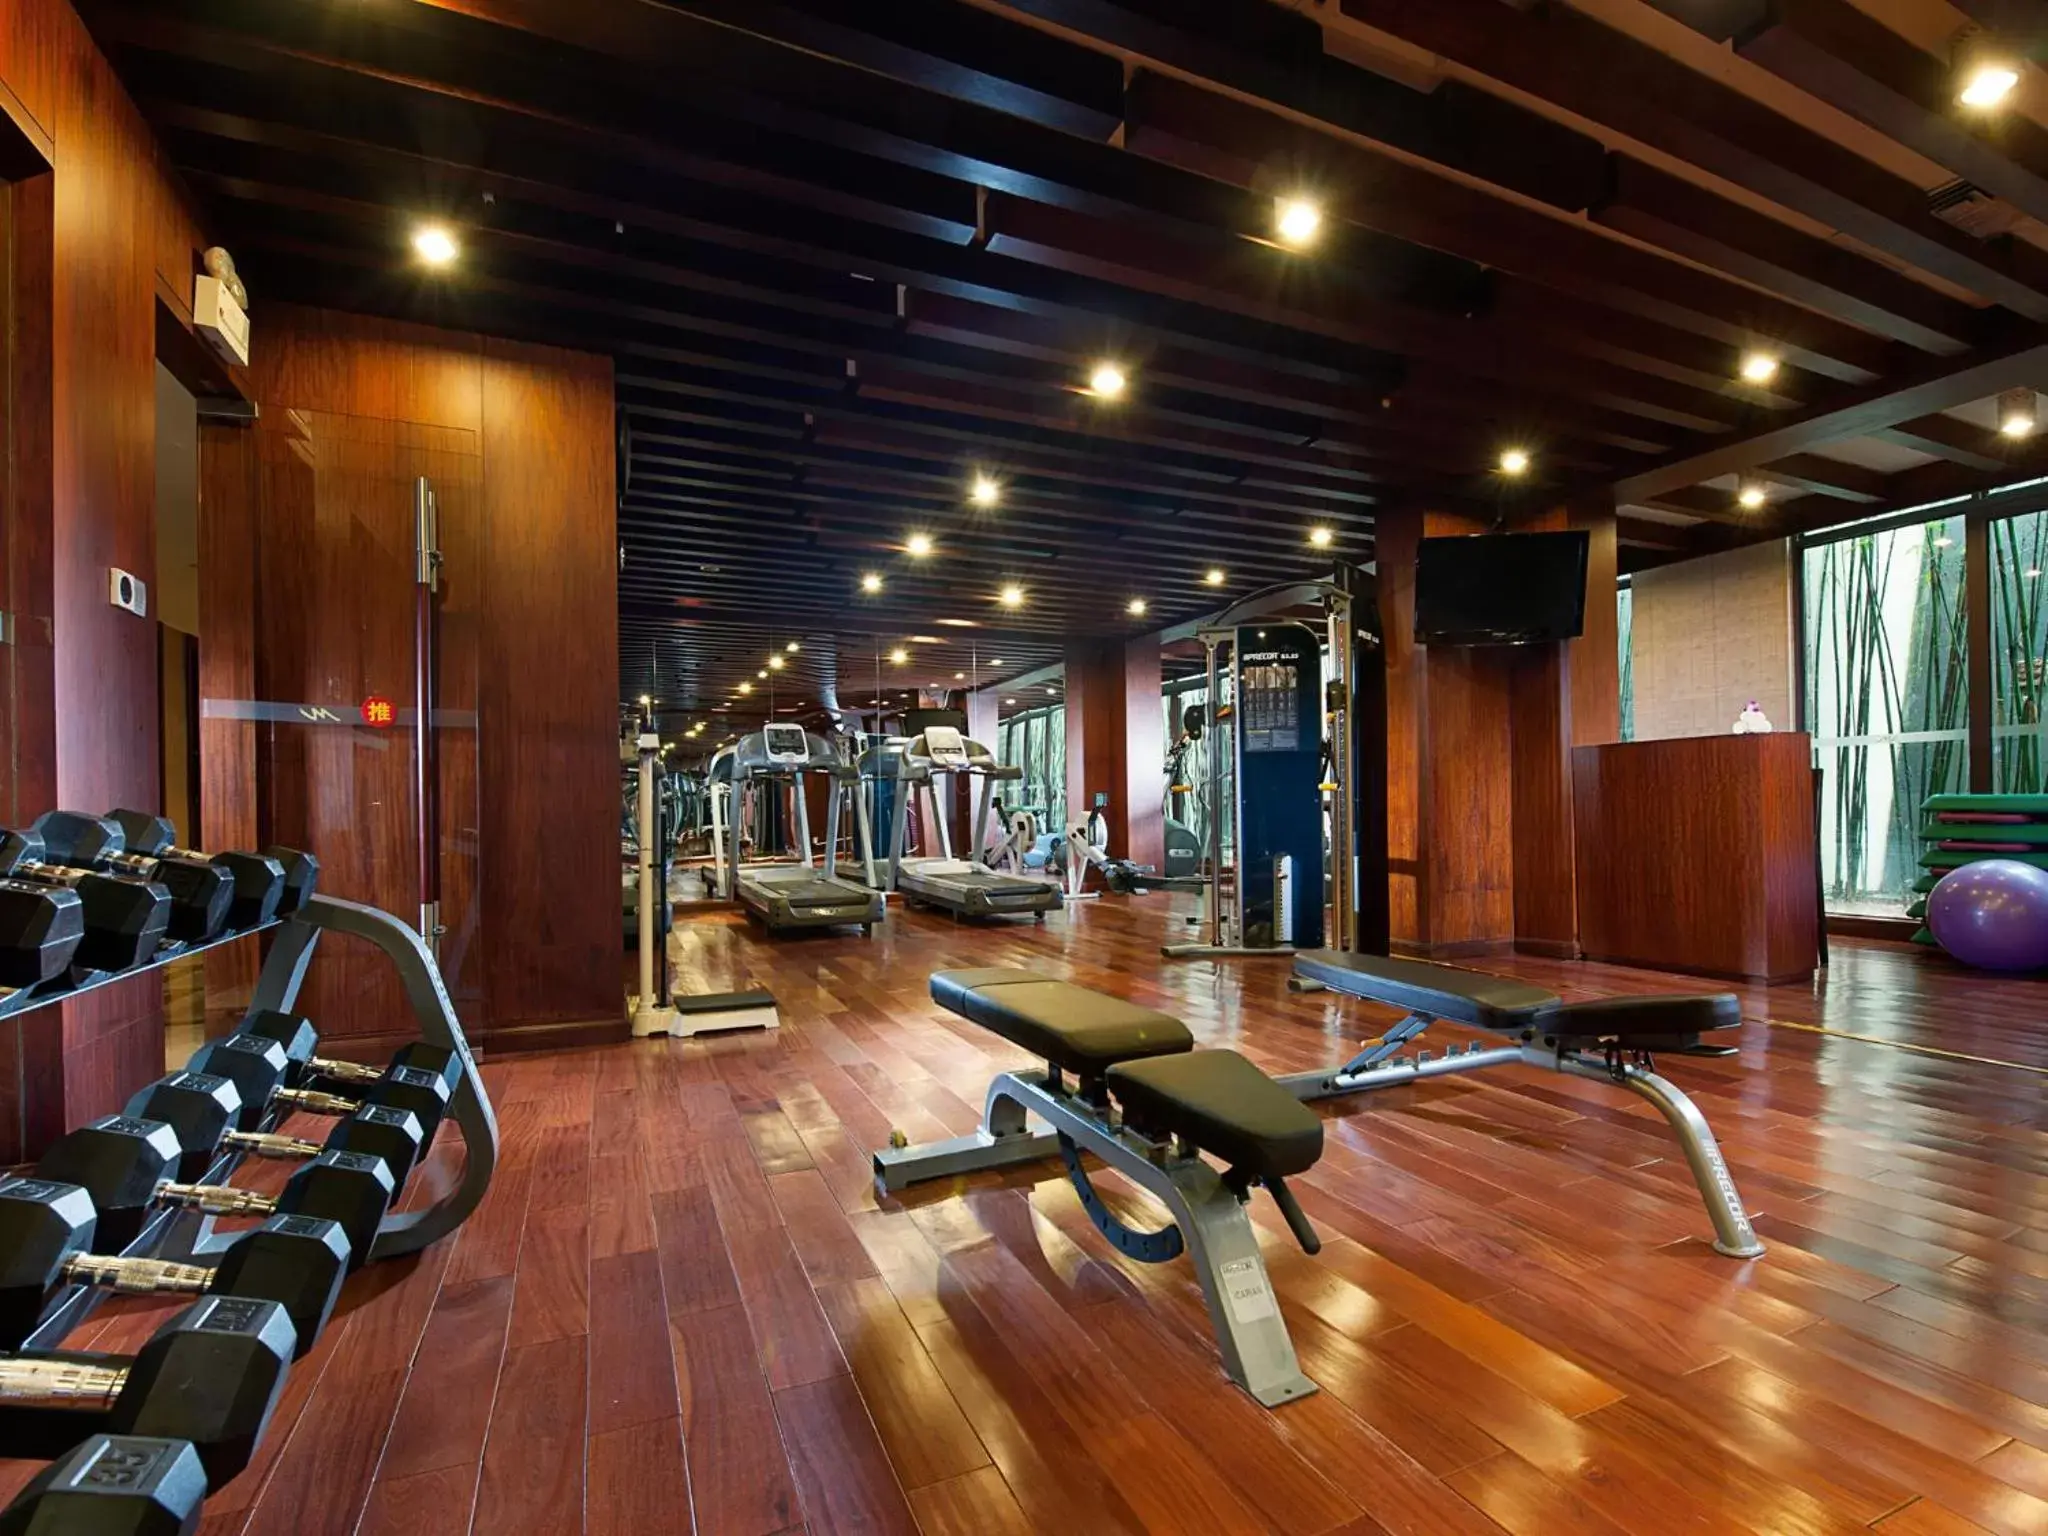 Fitness centre/facilities, Fitness Center/Facilities in Grand Metropark Villa Resort Sanya Yalong Bay